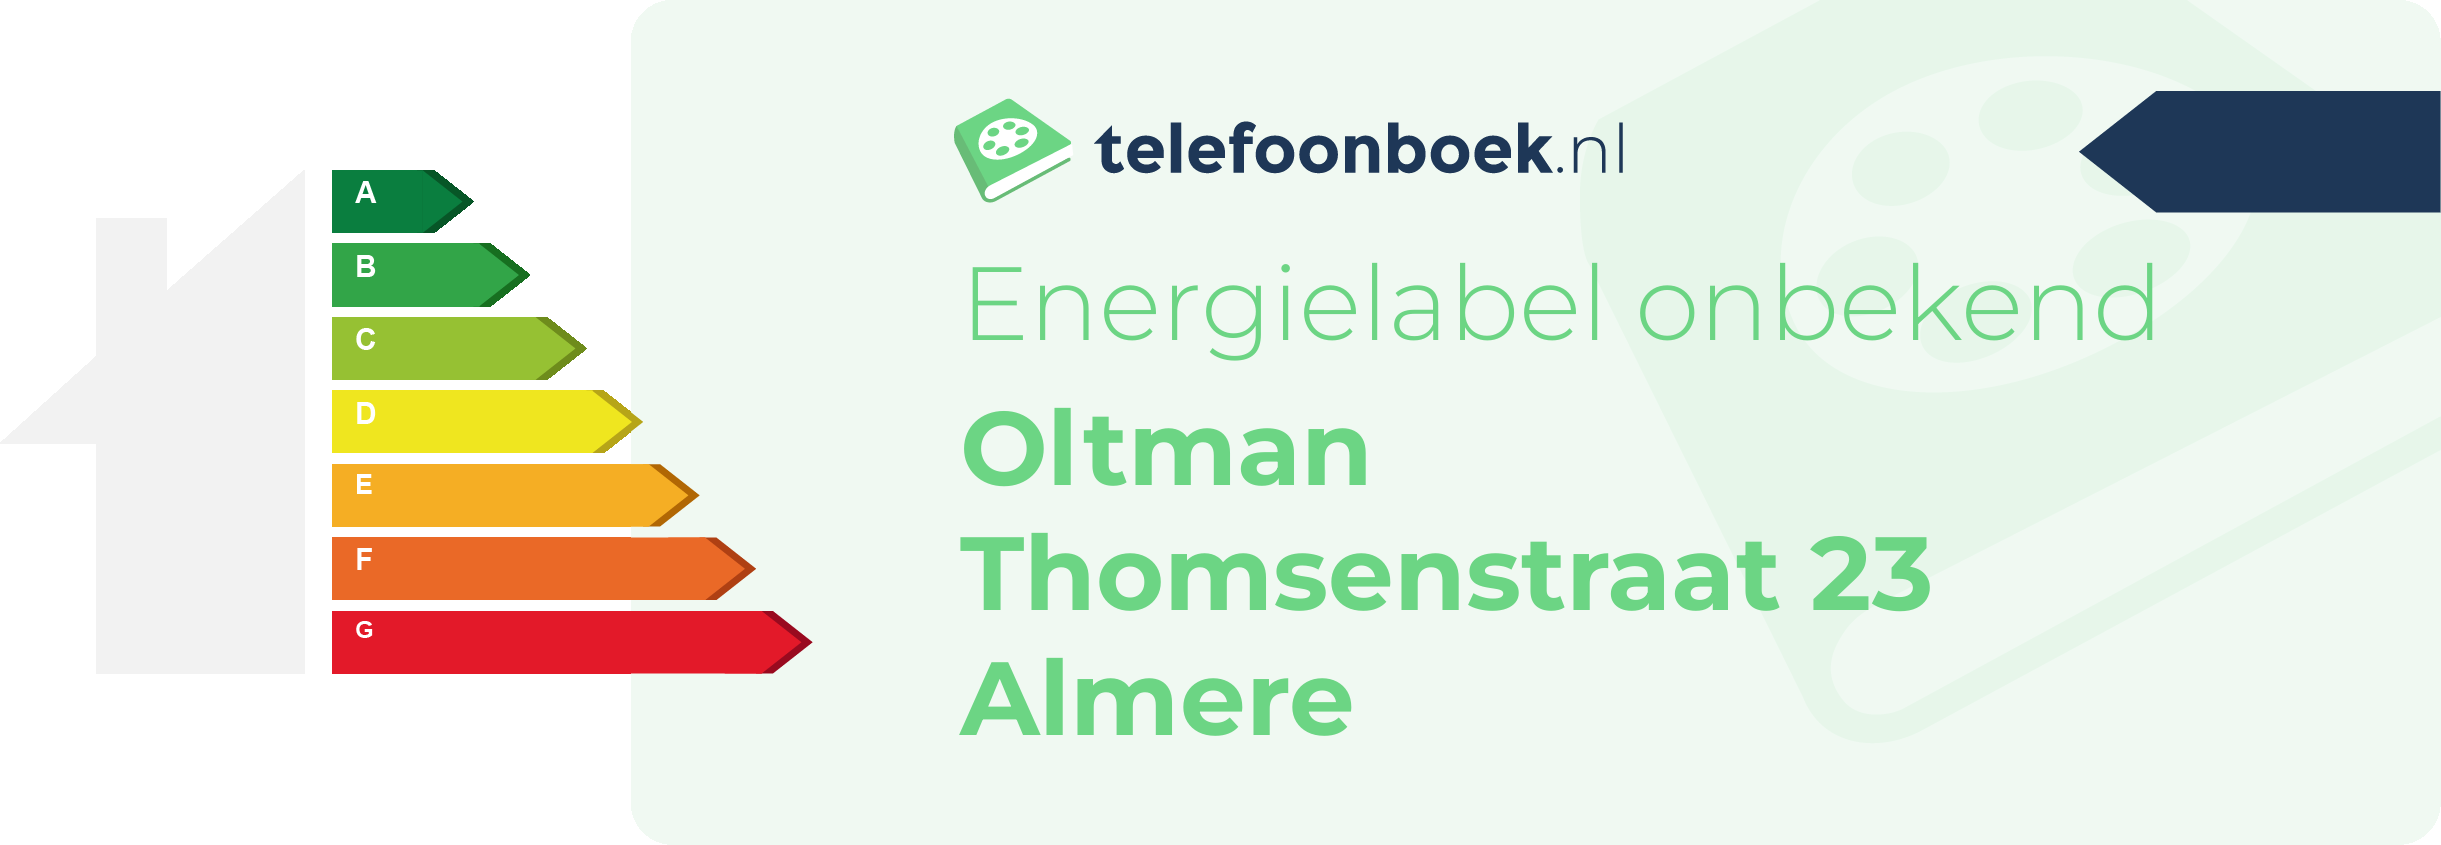 Energielabel Oltman Thomsenstraat 23 Almere